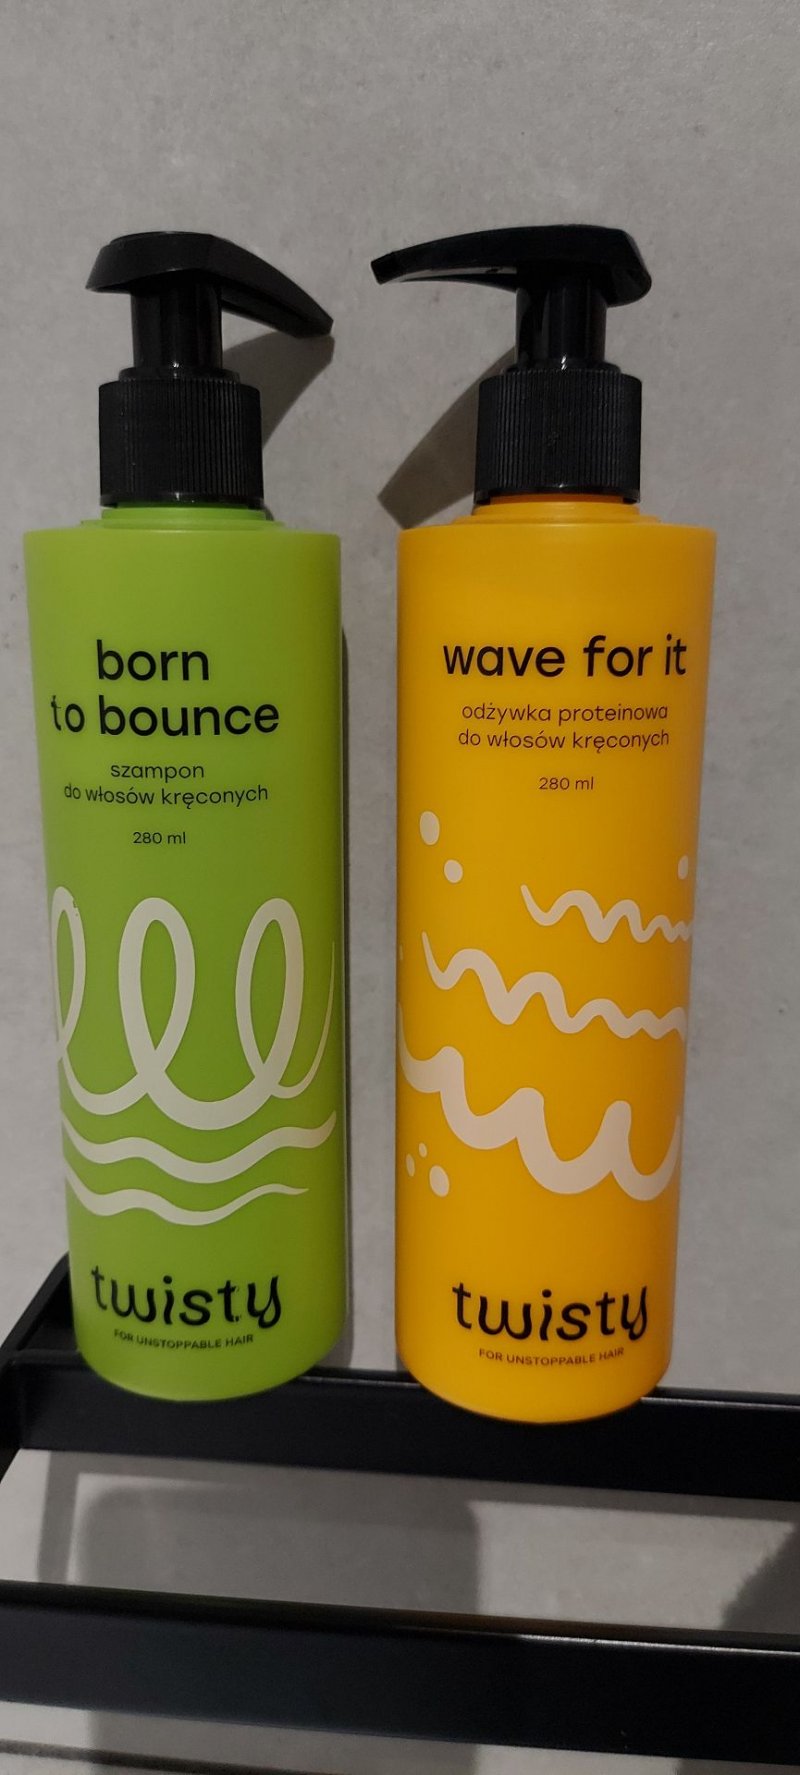 Twisty, șampon pentru păr creț Born to Bounce 